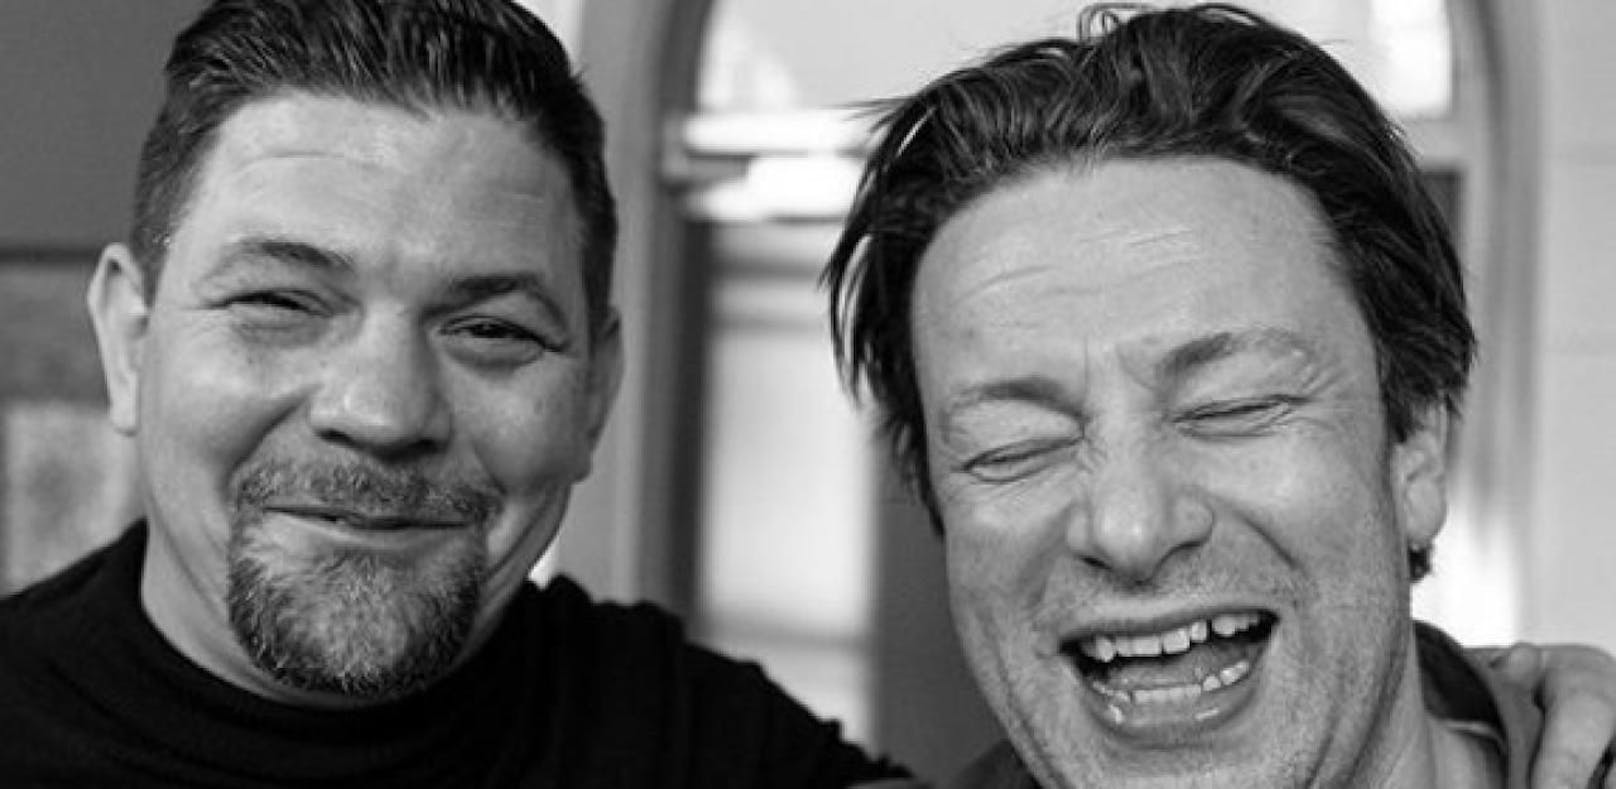 Kampfansage: Tim Mälzer fordert Jamie Oliver